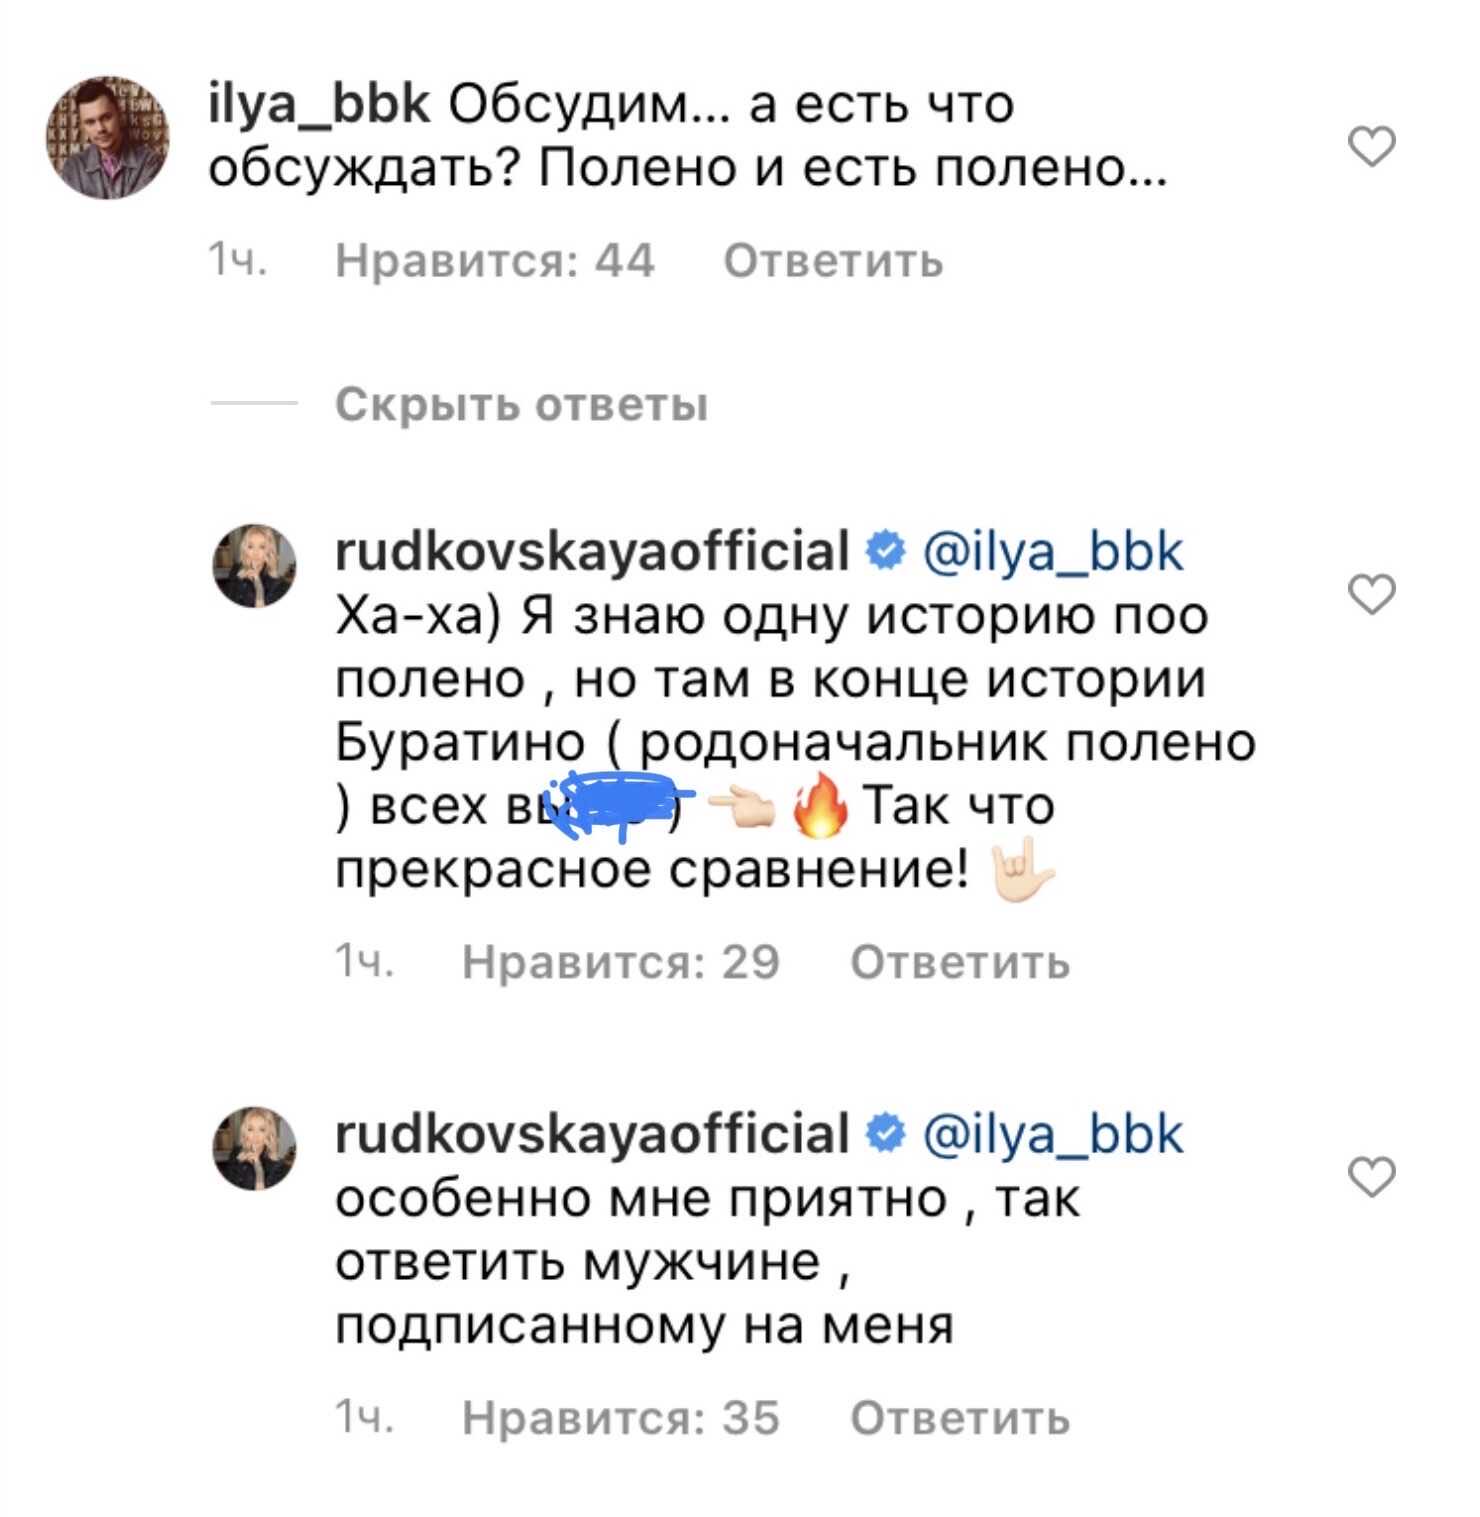 Яна Рудковская колко и нецензурную ответила подписчику, сравнившему её с поленом